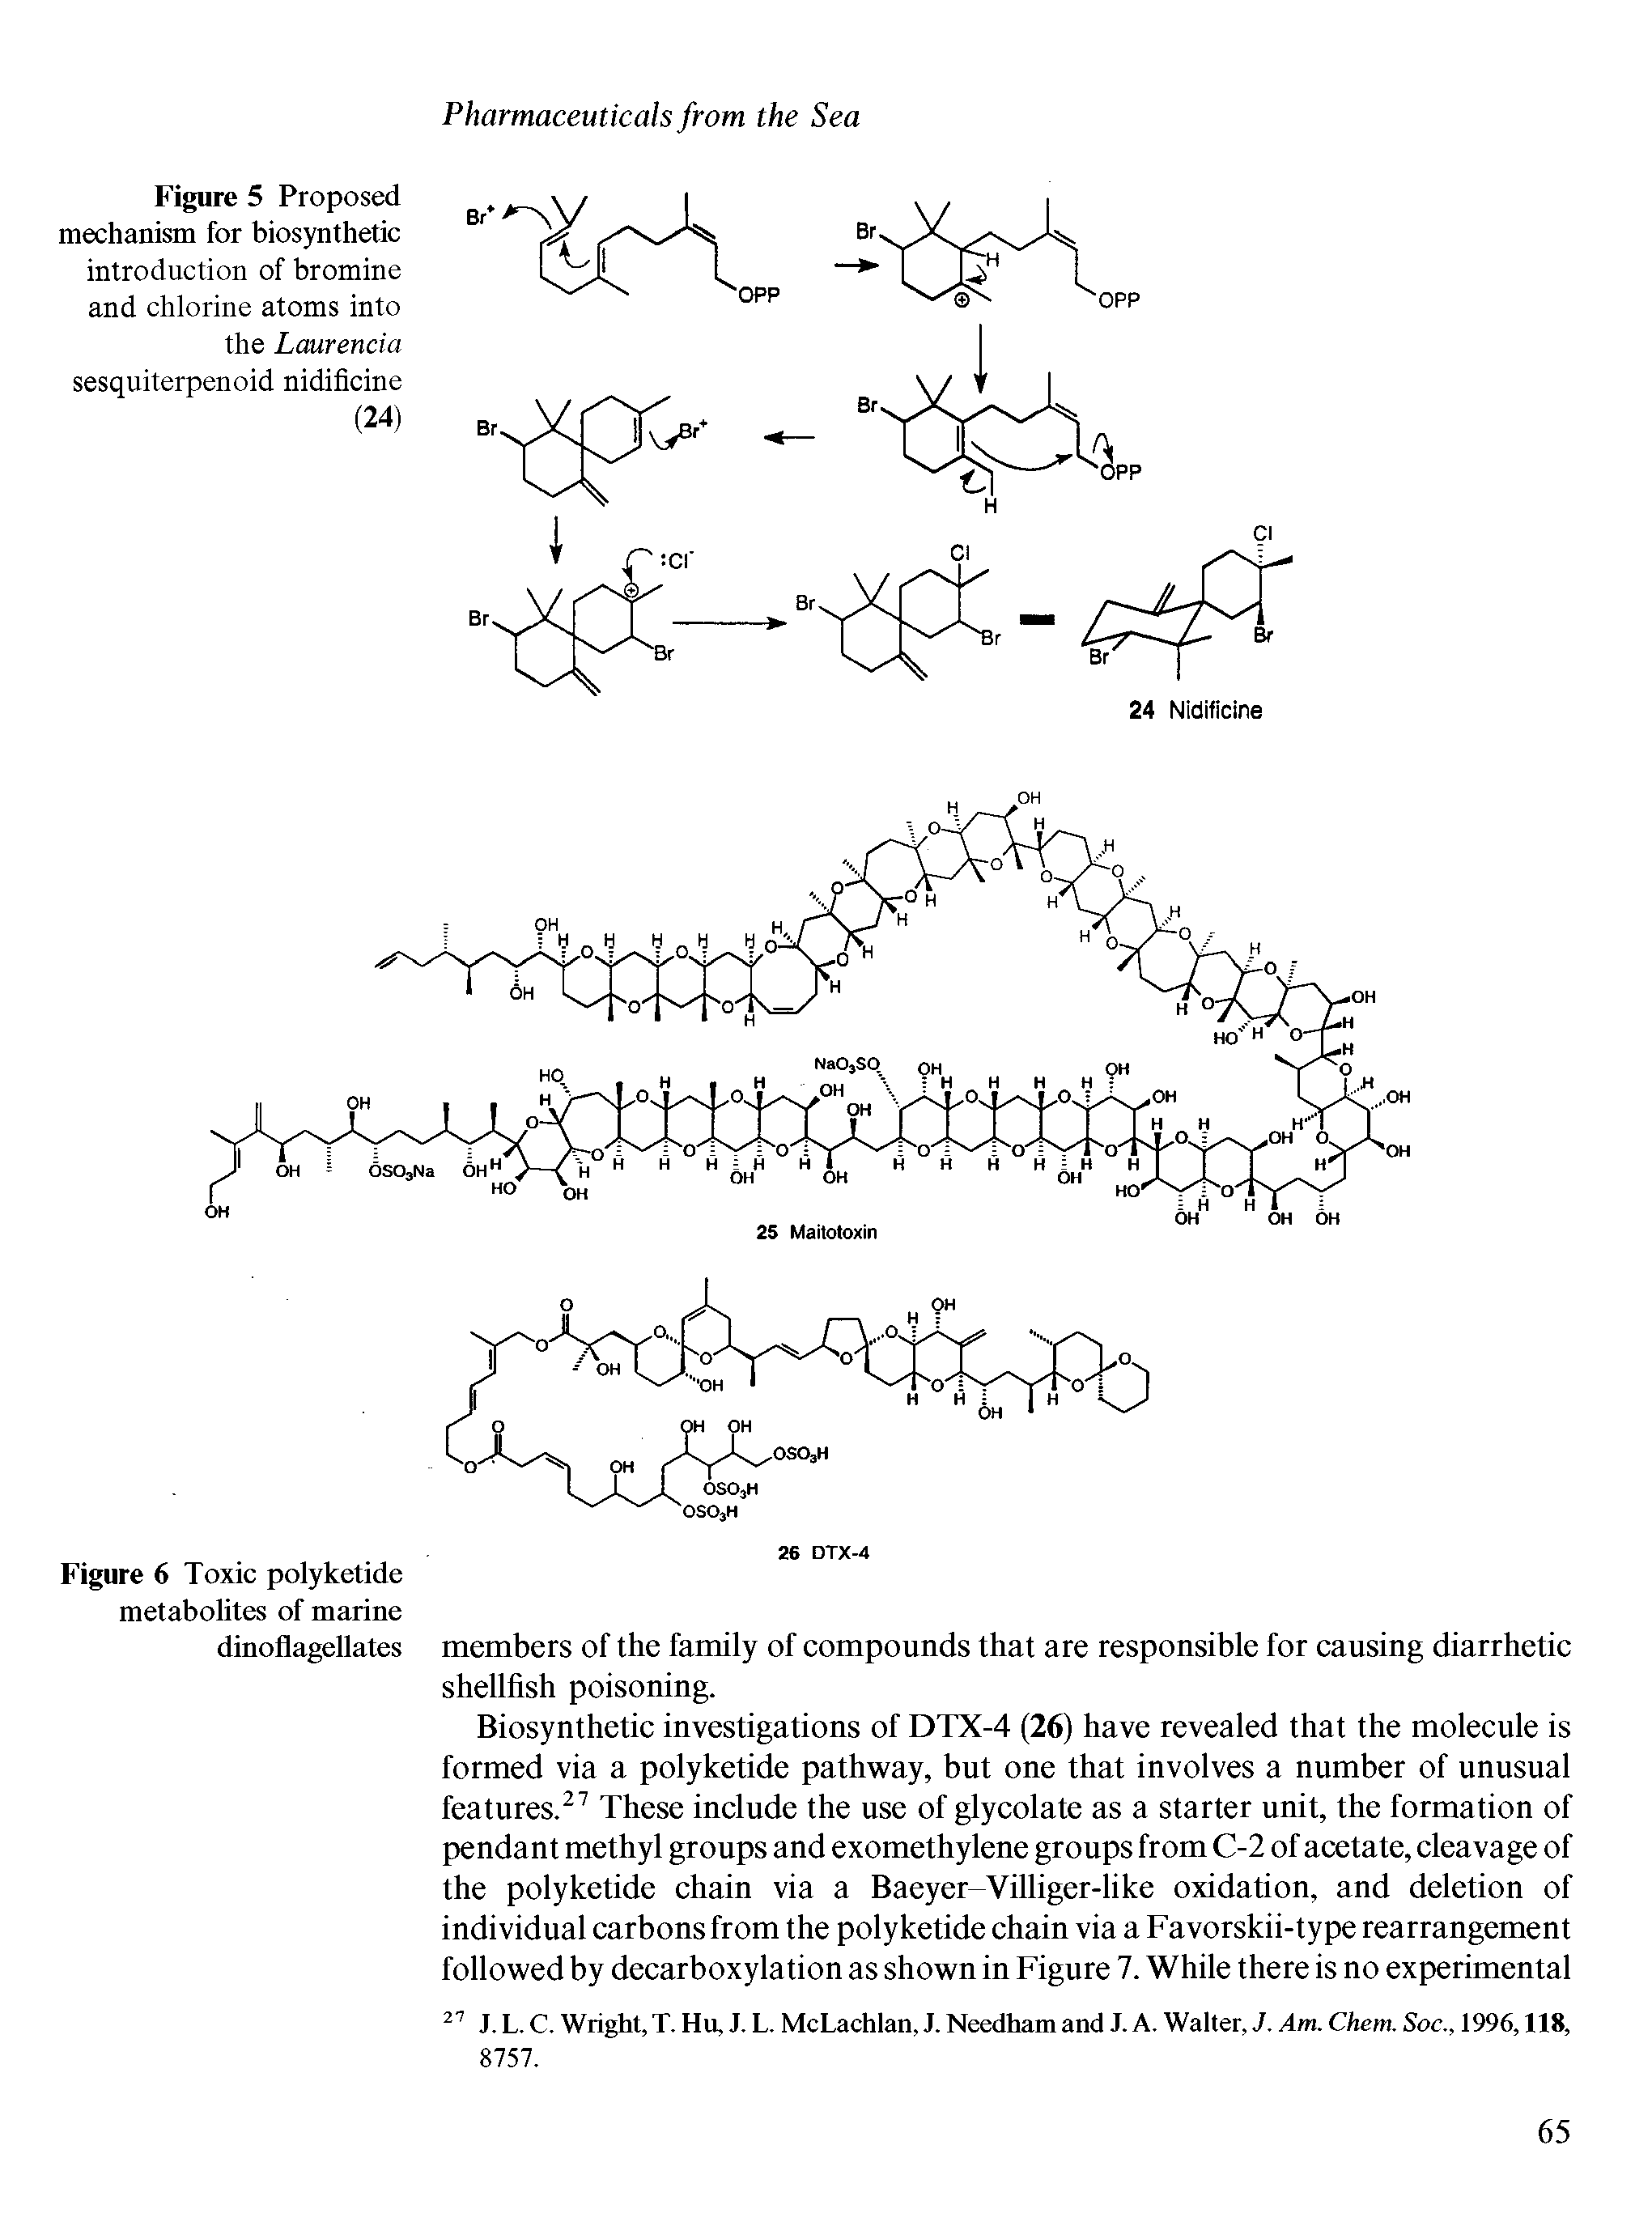 Figure 6 Toxic polyketide metabolites of marine dinoflagellates...